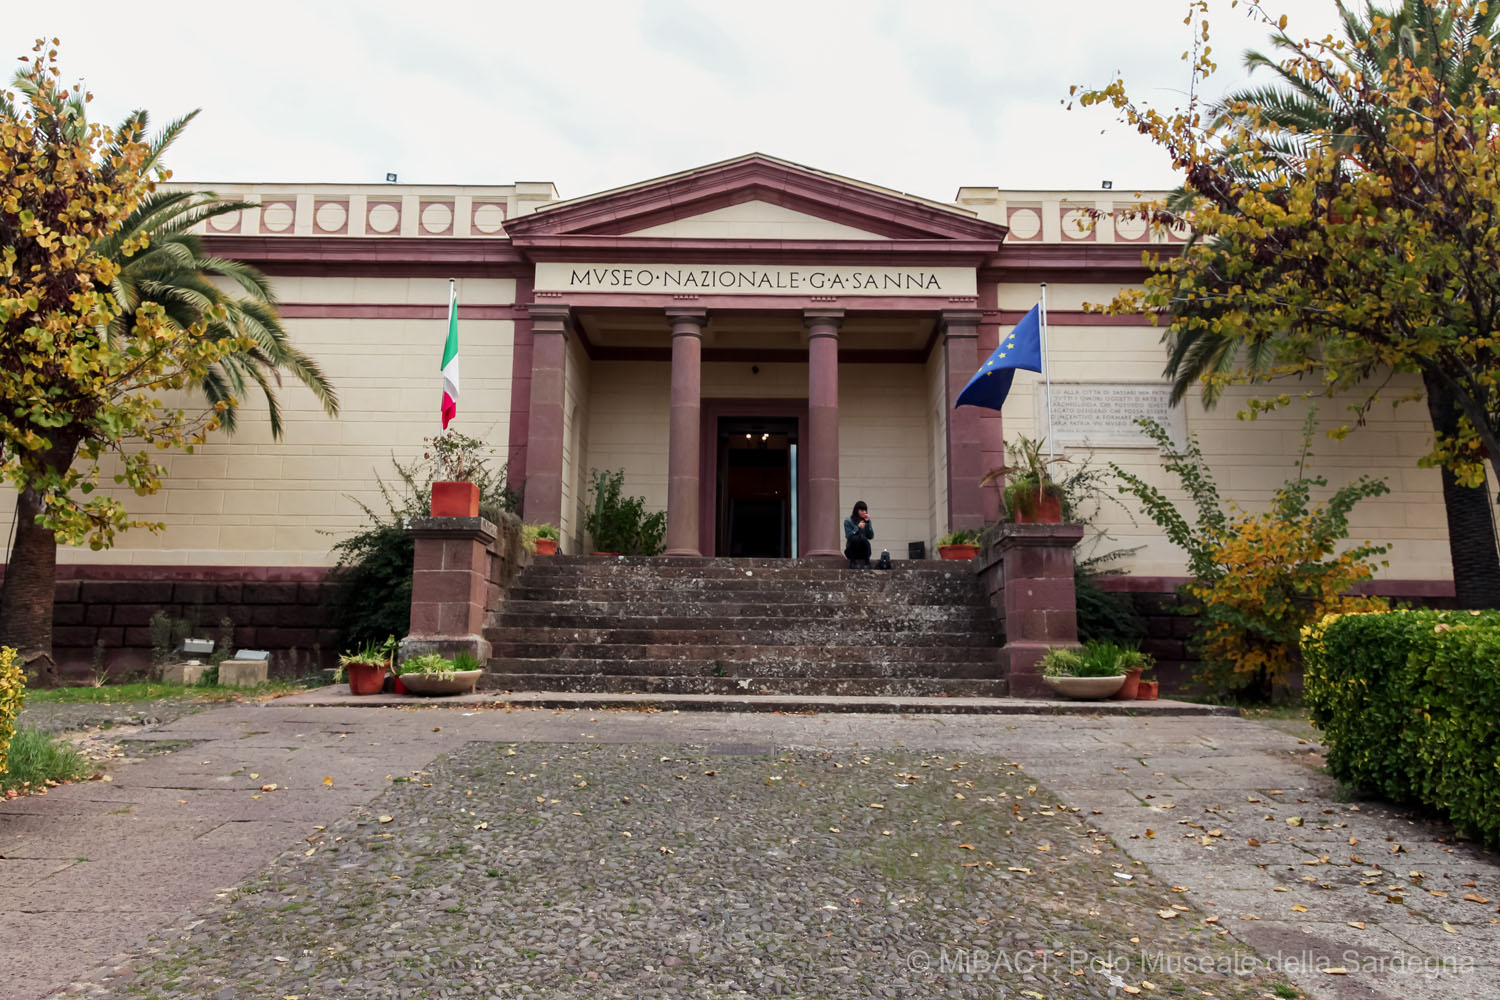 Sassari – Museo Archeologico – Museo Nazionale Archeologico ed Etnografico “Giovanni Antonio Sanna”. Riallestimento, recupero